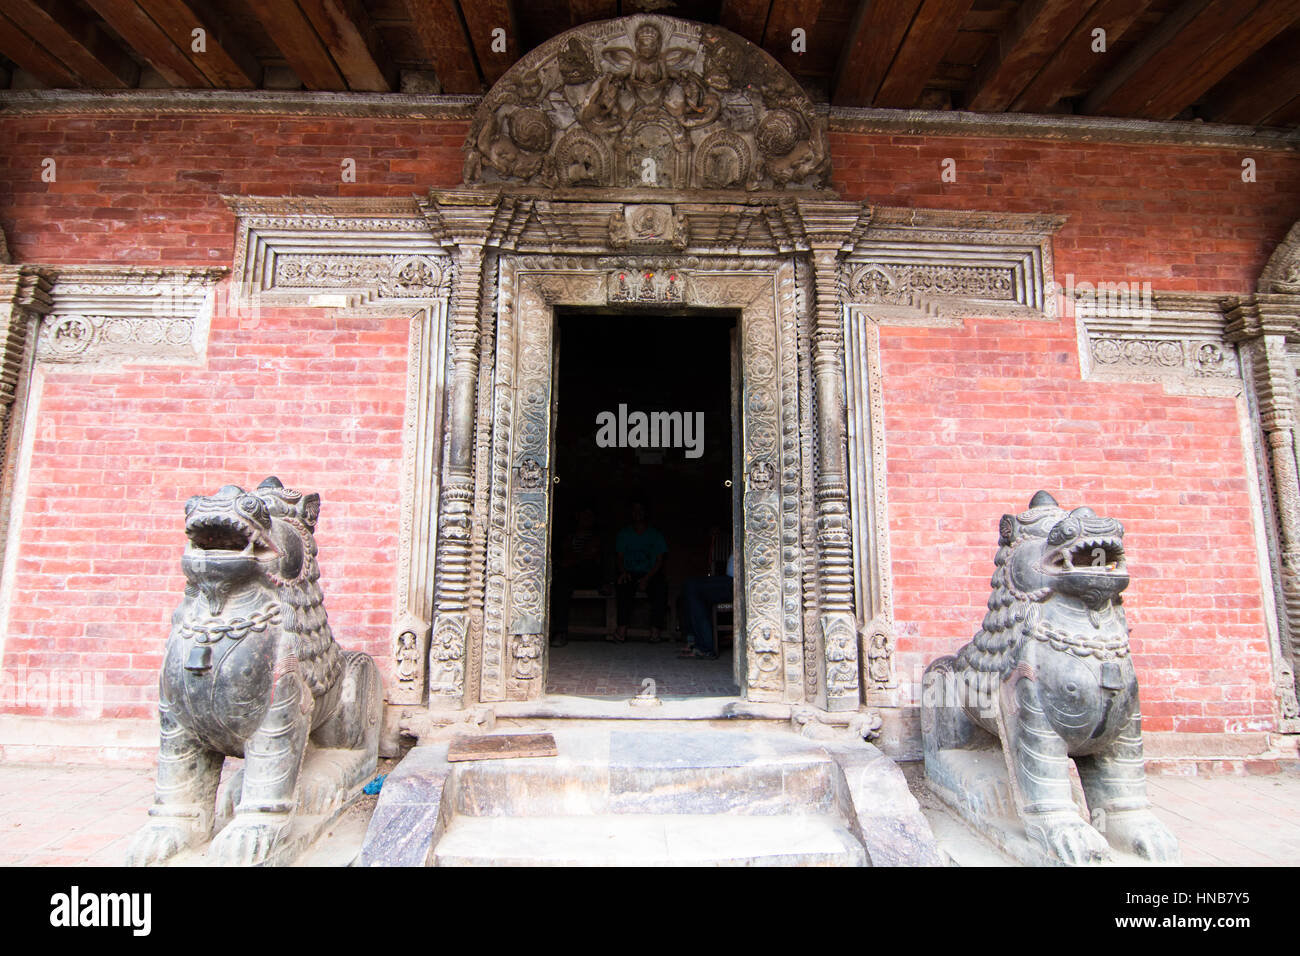 Löwen bewachen den Eingang am Eingang eines alten Gebäudes mit einer kunstvoll geschnitzten hölzernen Türsturz in Bhaktapur, Kathmandu, Nepal Stockfoto